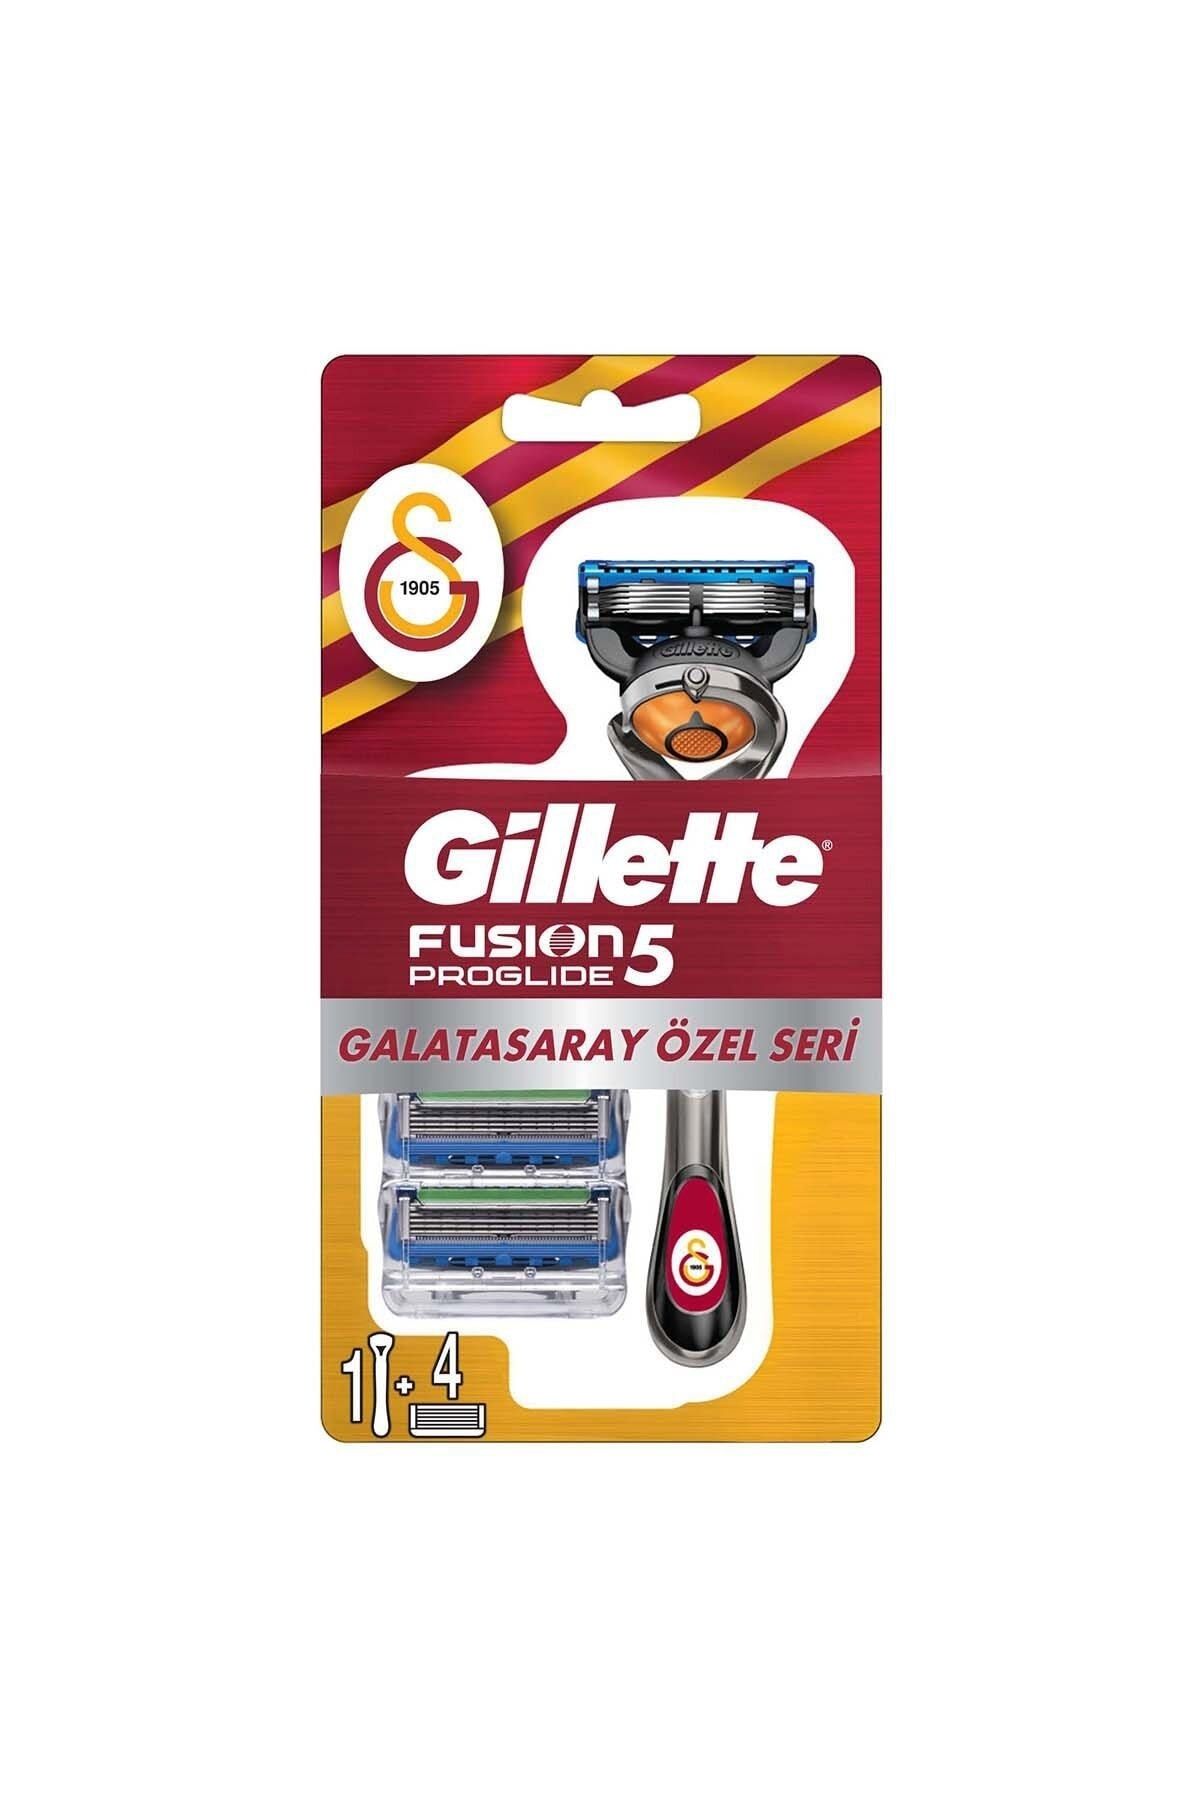 Gillette Fusion 5 Proglide Tıraş Makinesi + 4'lü Yedek Başlık Galatasaray Özel Seri